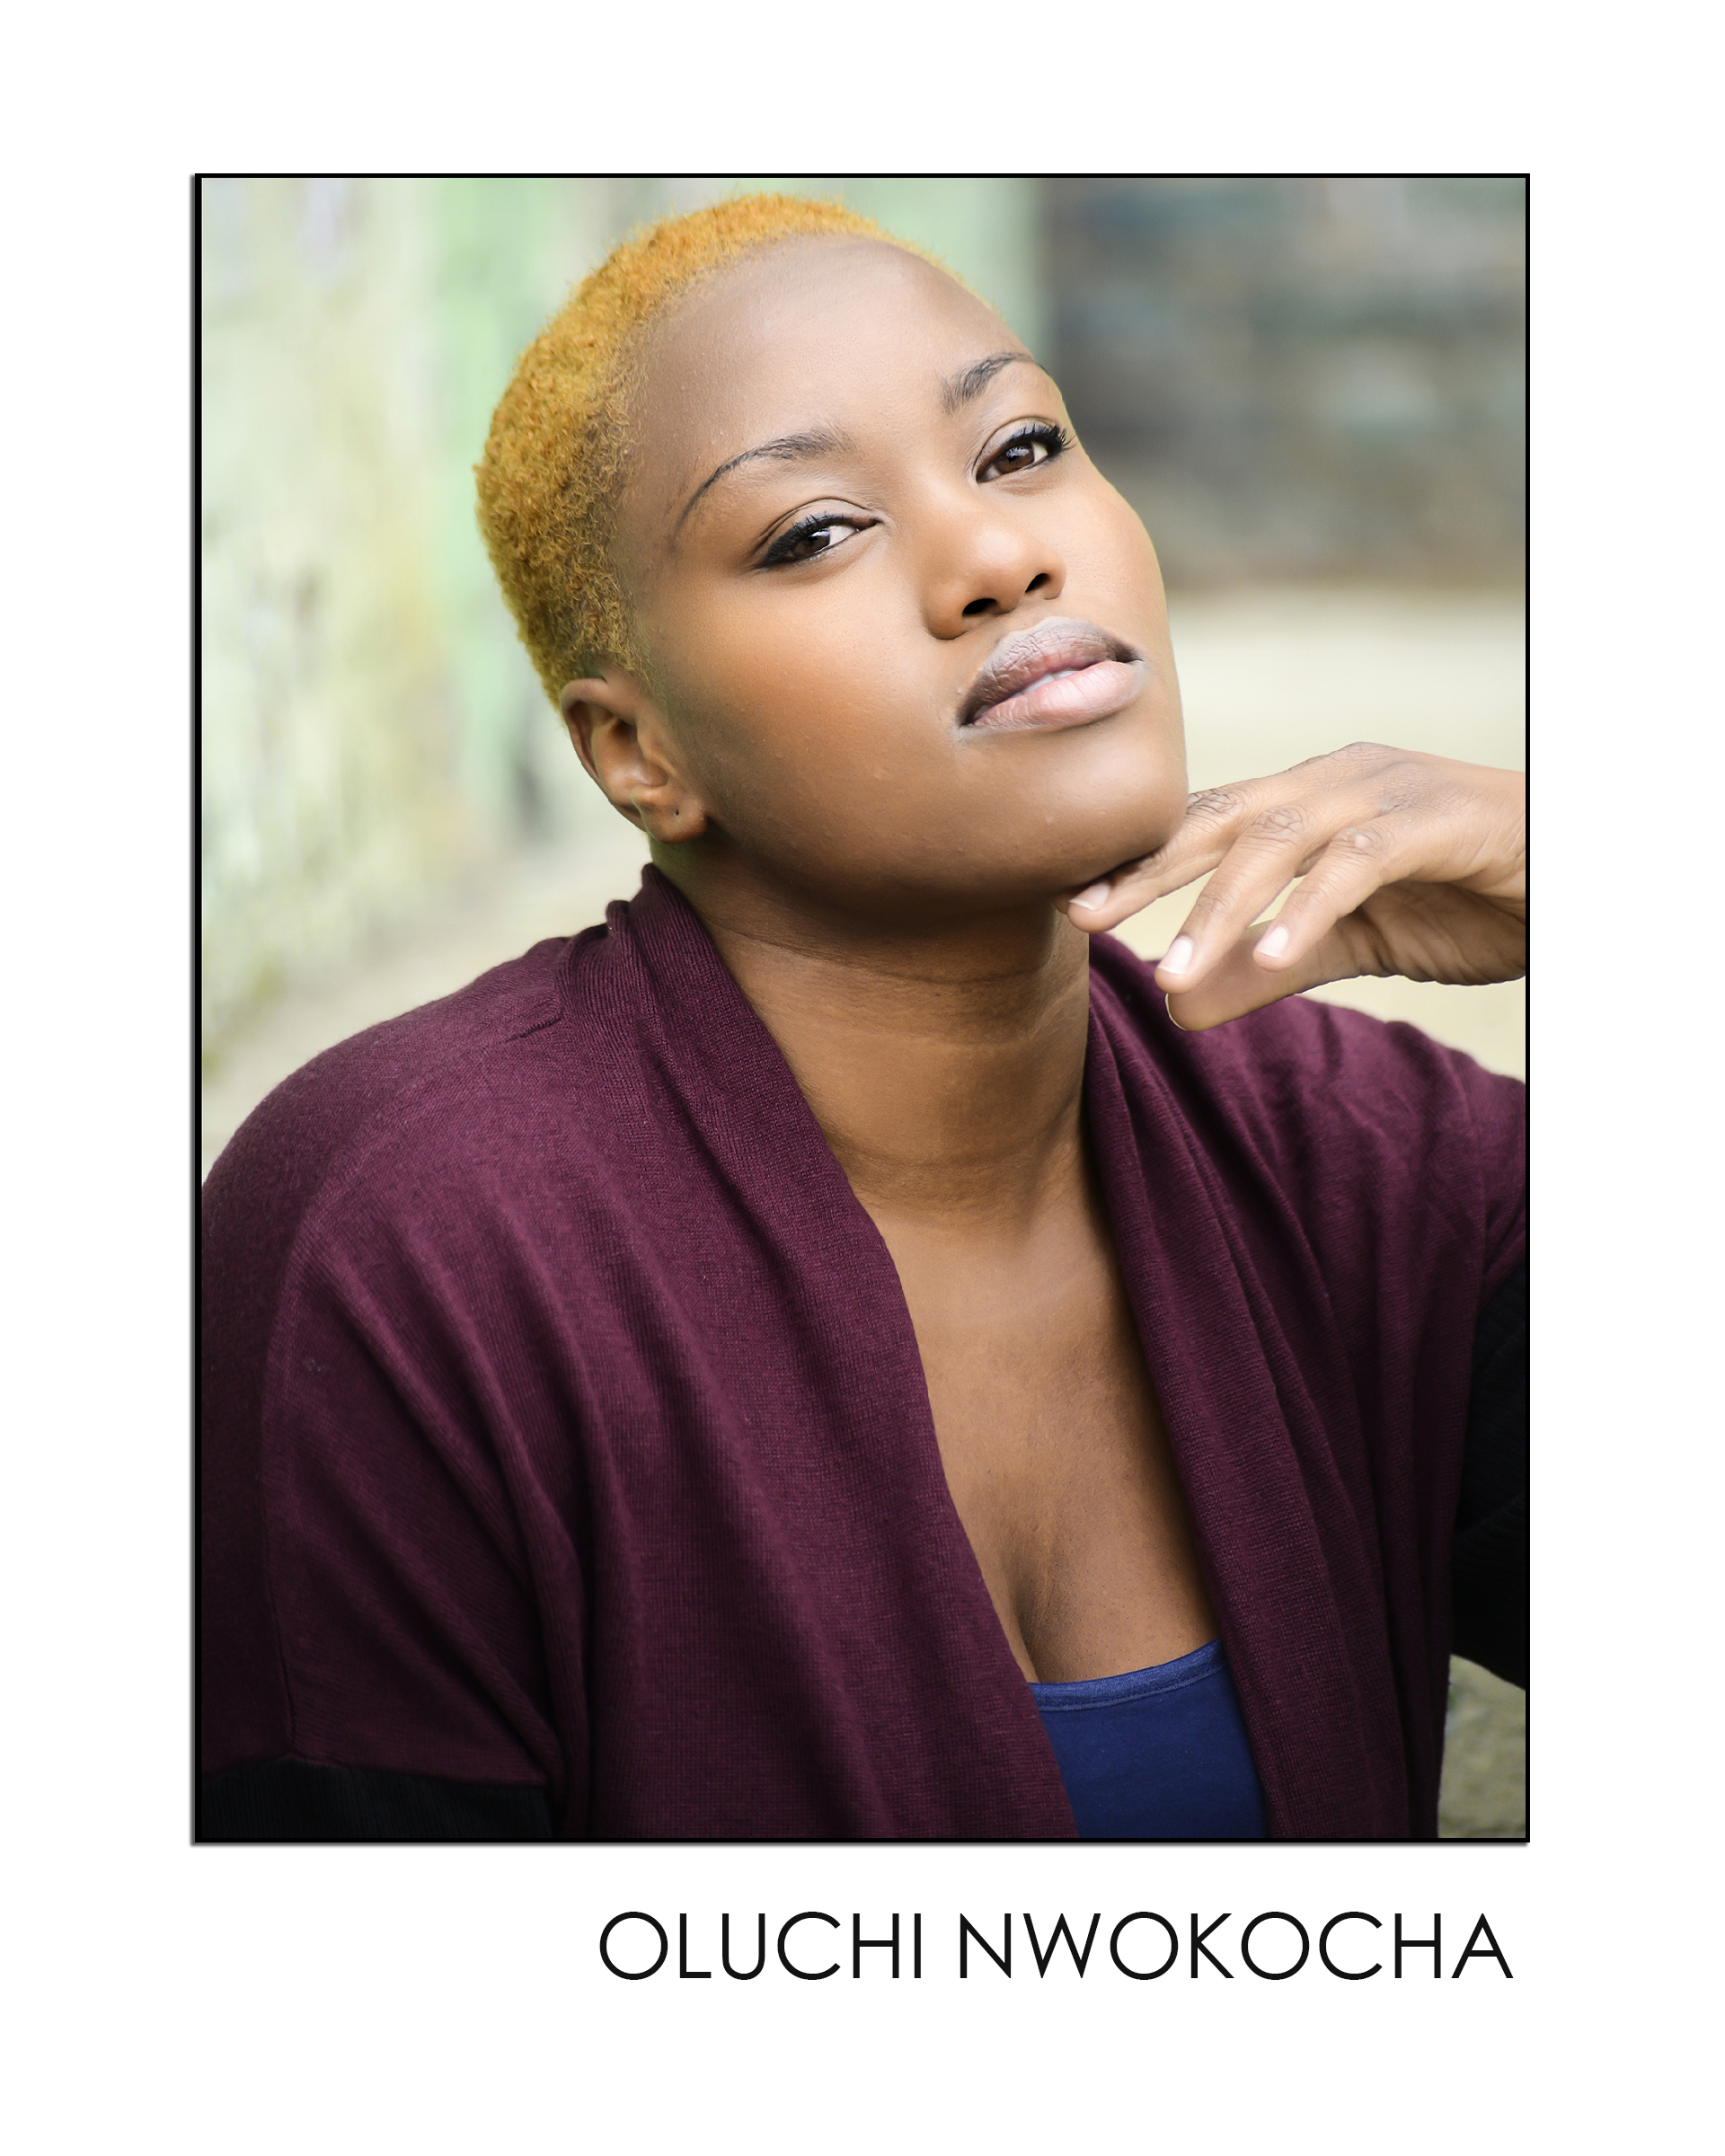 Oluchi Nwokocha